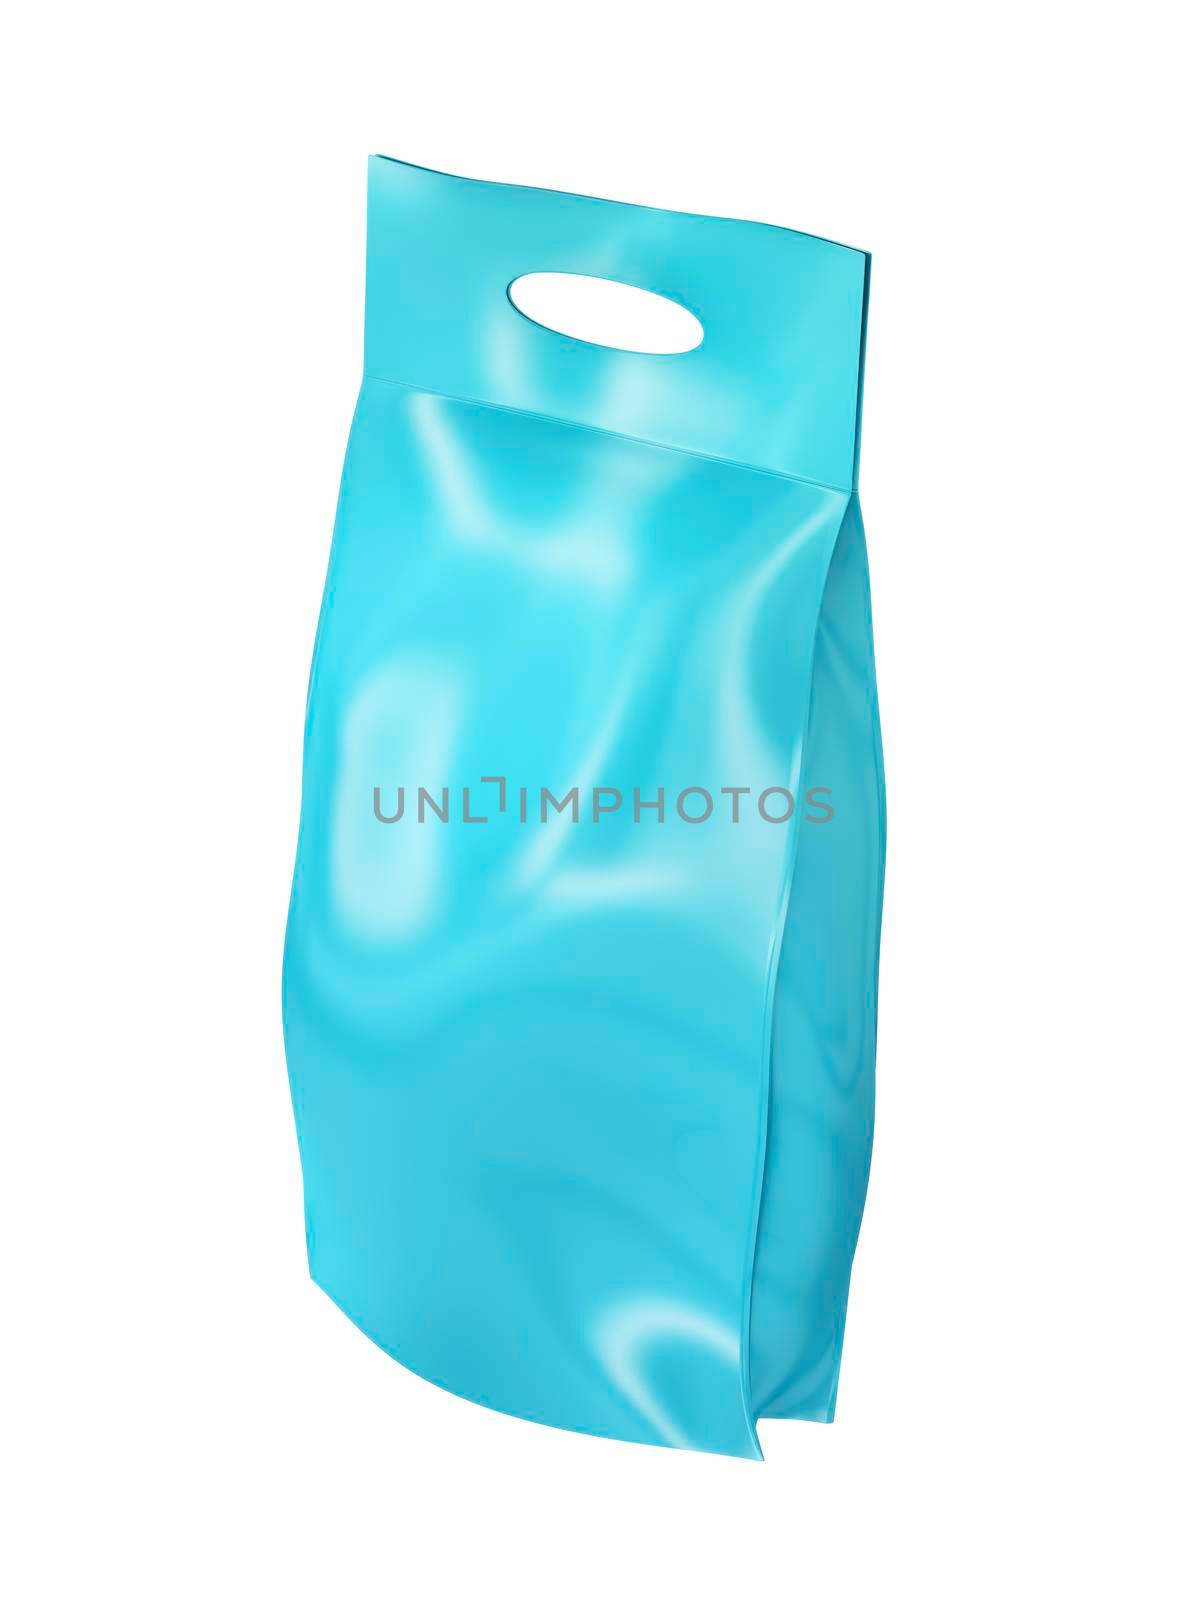 Blue washing powder bag, isolated on white background